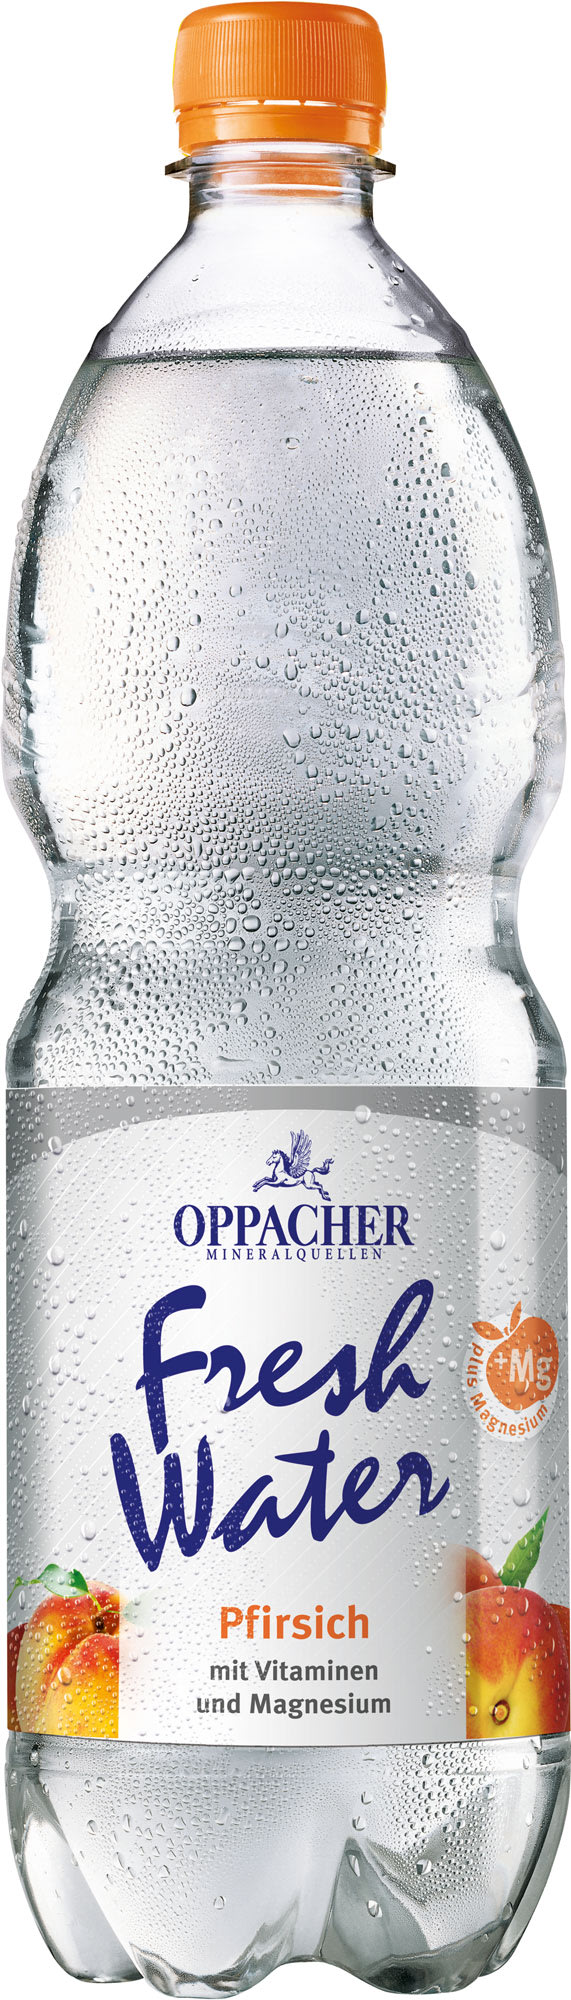 Oppacher Fresh Water Pfirsich Kasten 12 x 1 l PET Einweg